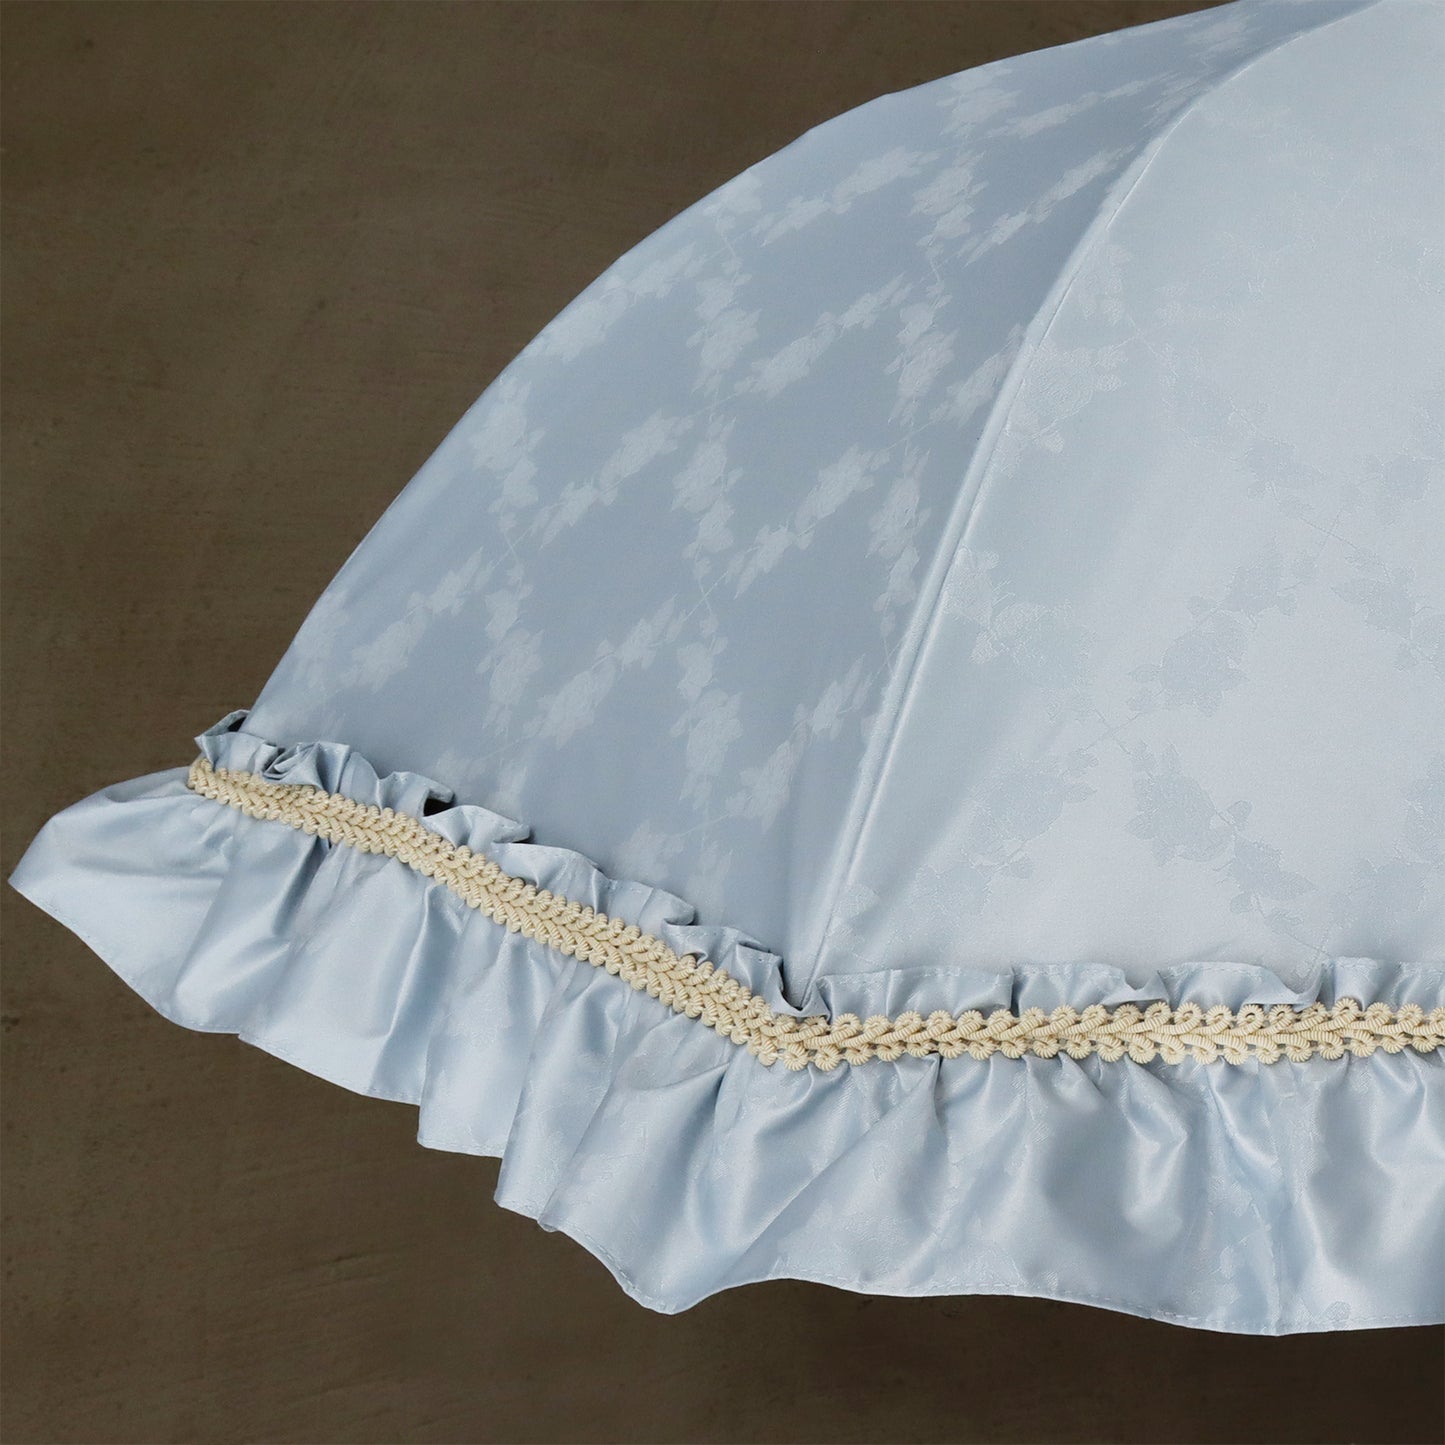 rose-carreaux (ローズ カロー) - 1級遮光 日傘 晴雨兼用 UVカット ショート丈 フリル